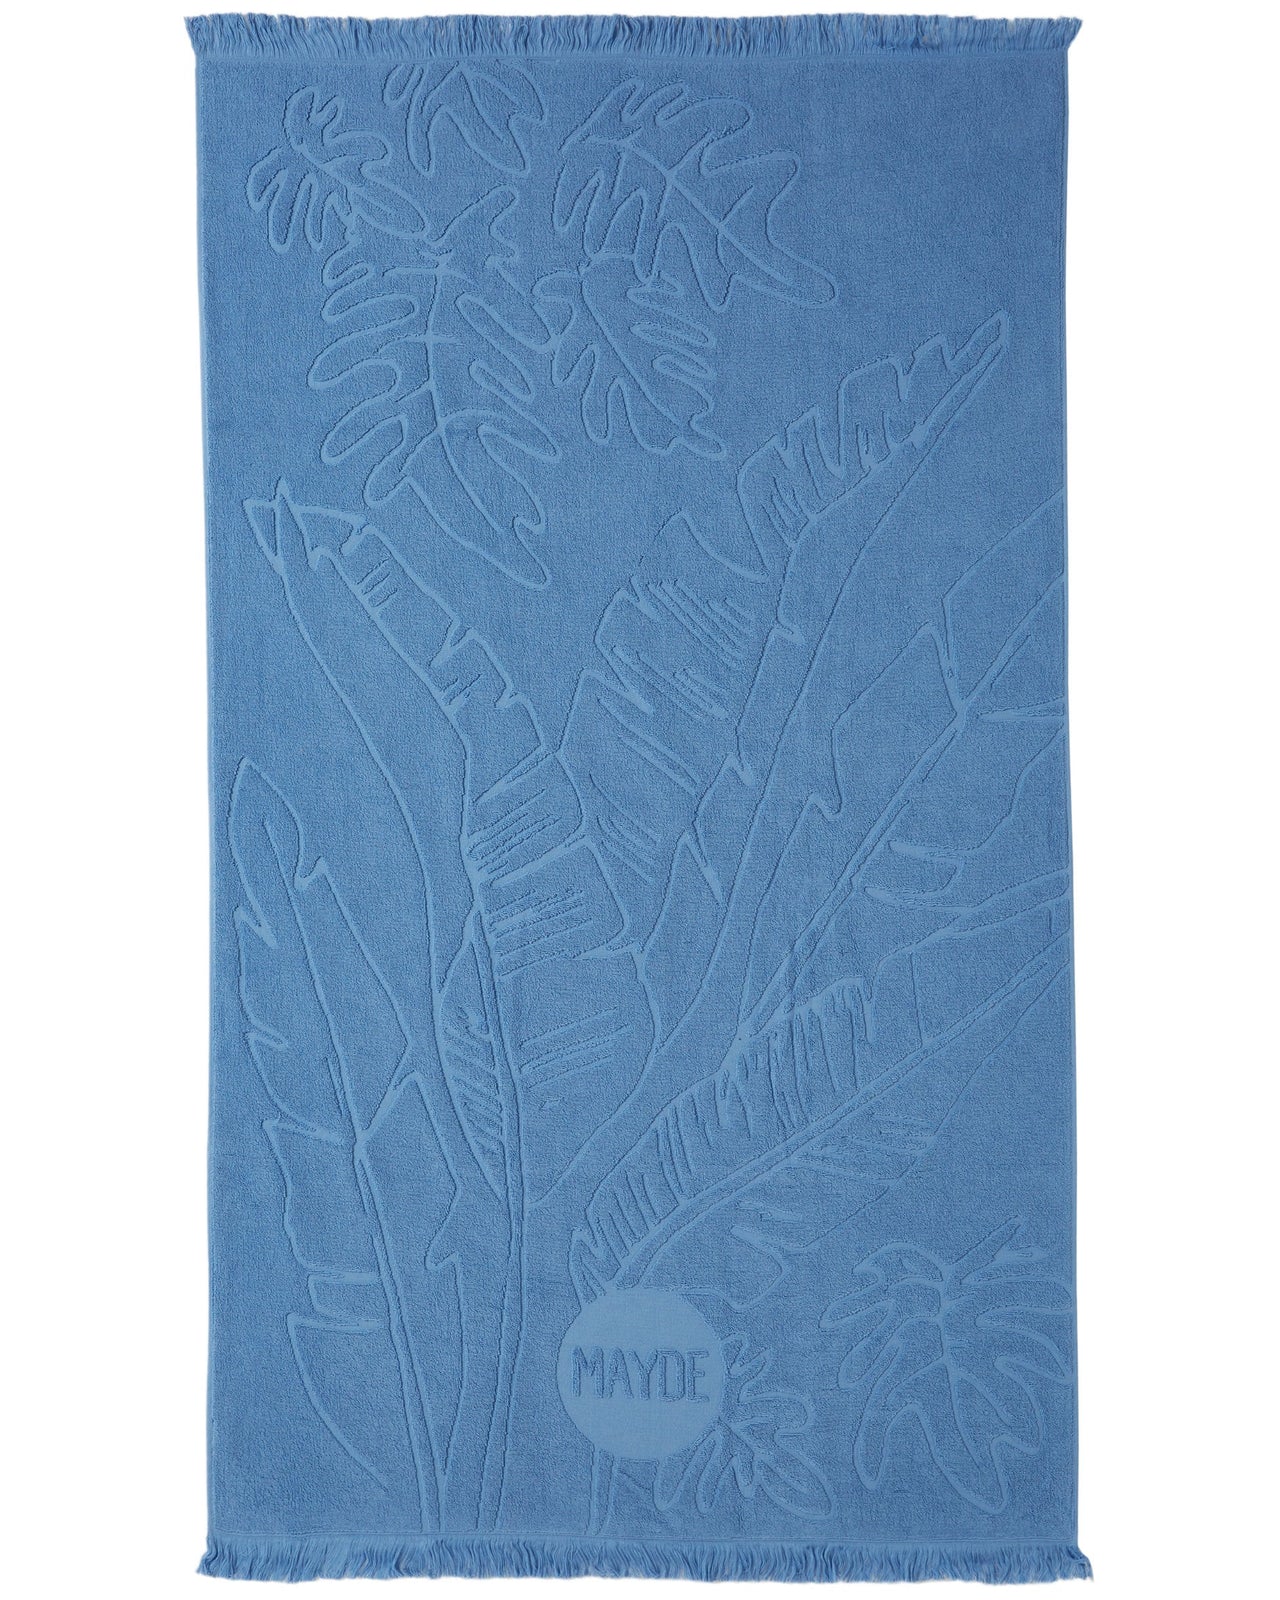 MAYDE DAINTREE TOWEL - CHAMBRAY BLUE